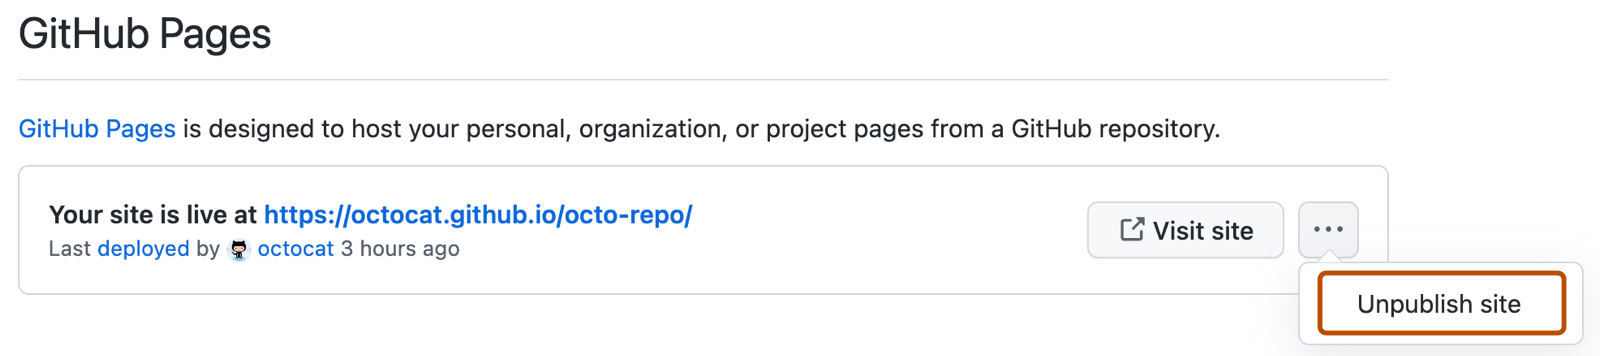 라이브 페이지 사이트의 URL을 보여 주는 GitHub Pages 설정의 스크린샷 오른쪽의 가로 케밥 아이콘 아래에 "게시 취소 사이트" 드롭다운 옵션이 진한 주황색으로 표시됩니다.